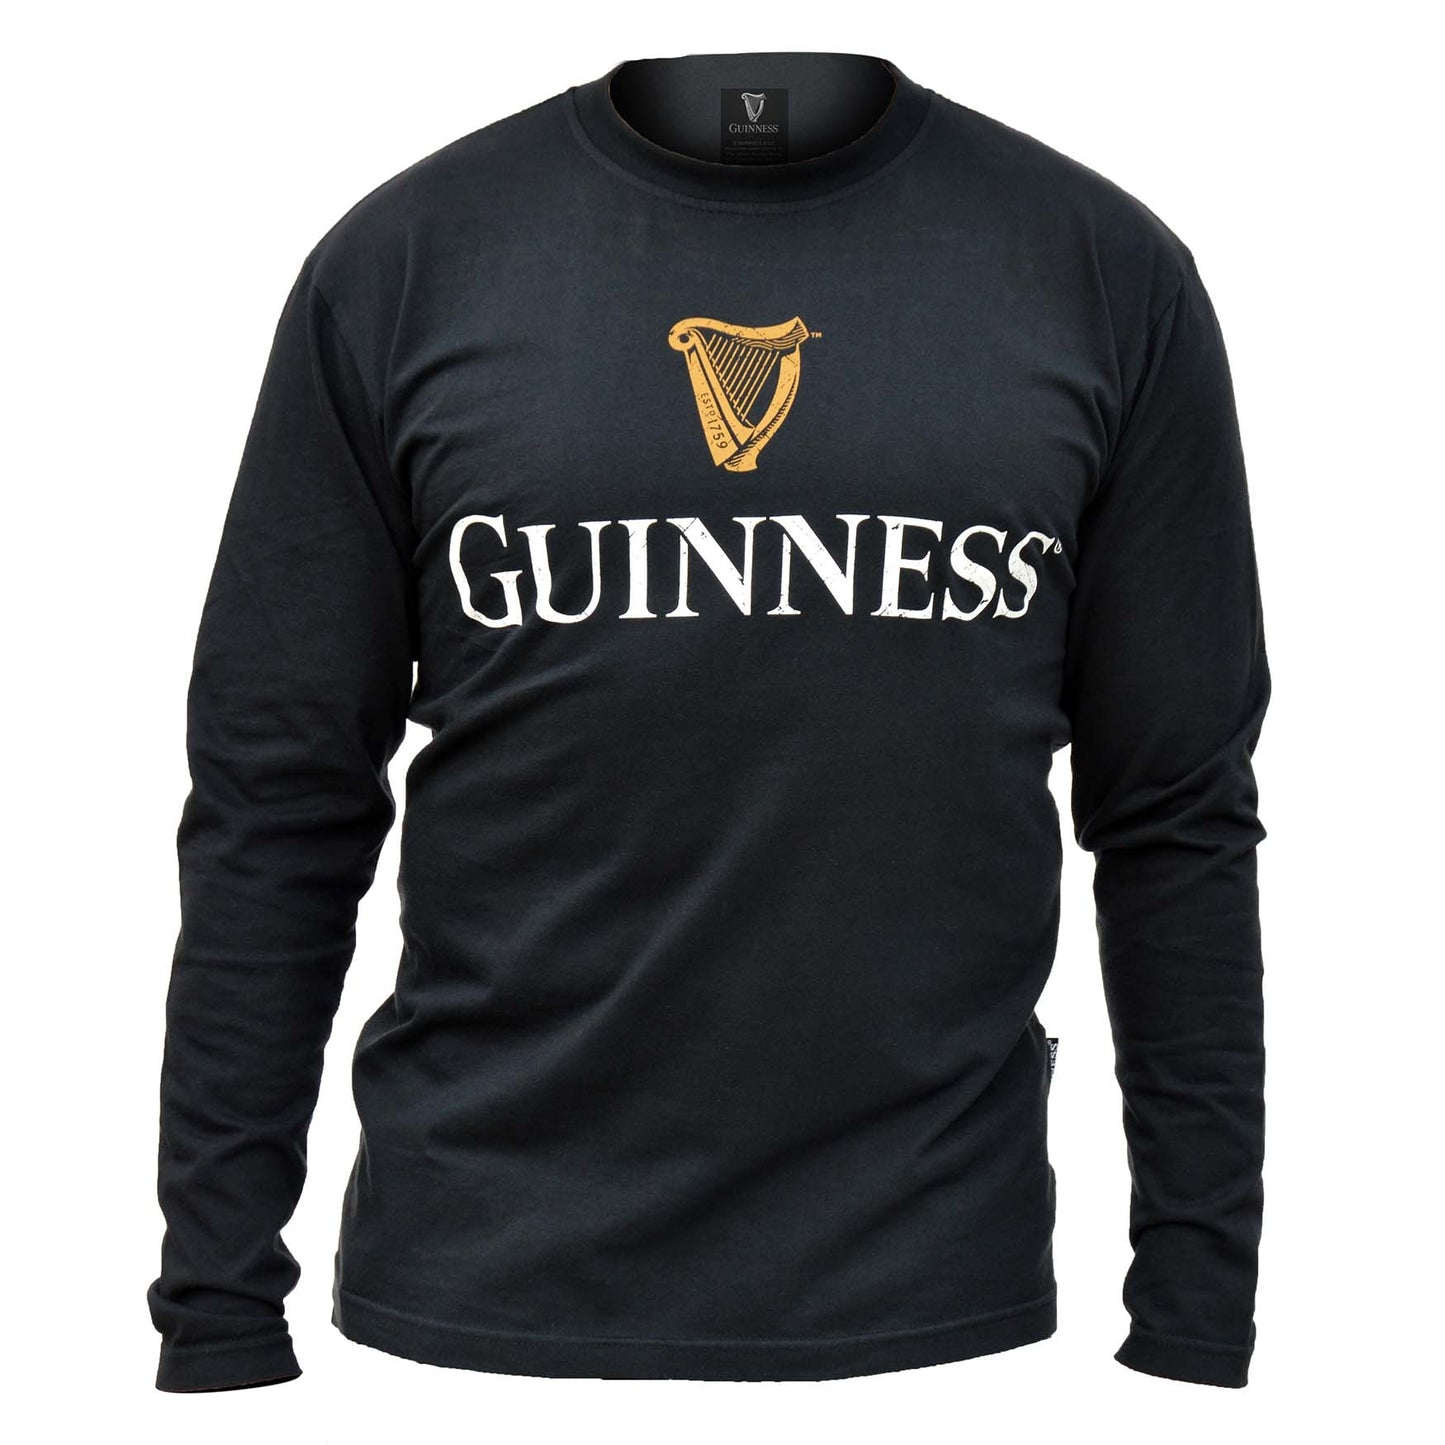 Guinness UK Black Trademark Label Long Sleeve T-Shirt, a Guinness UK trademark wardrobe essential.